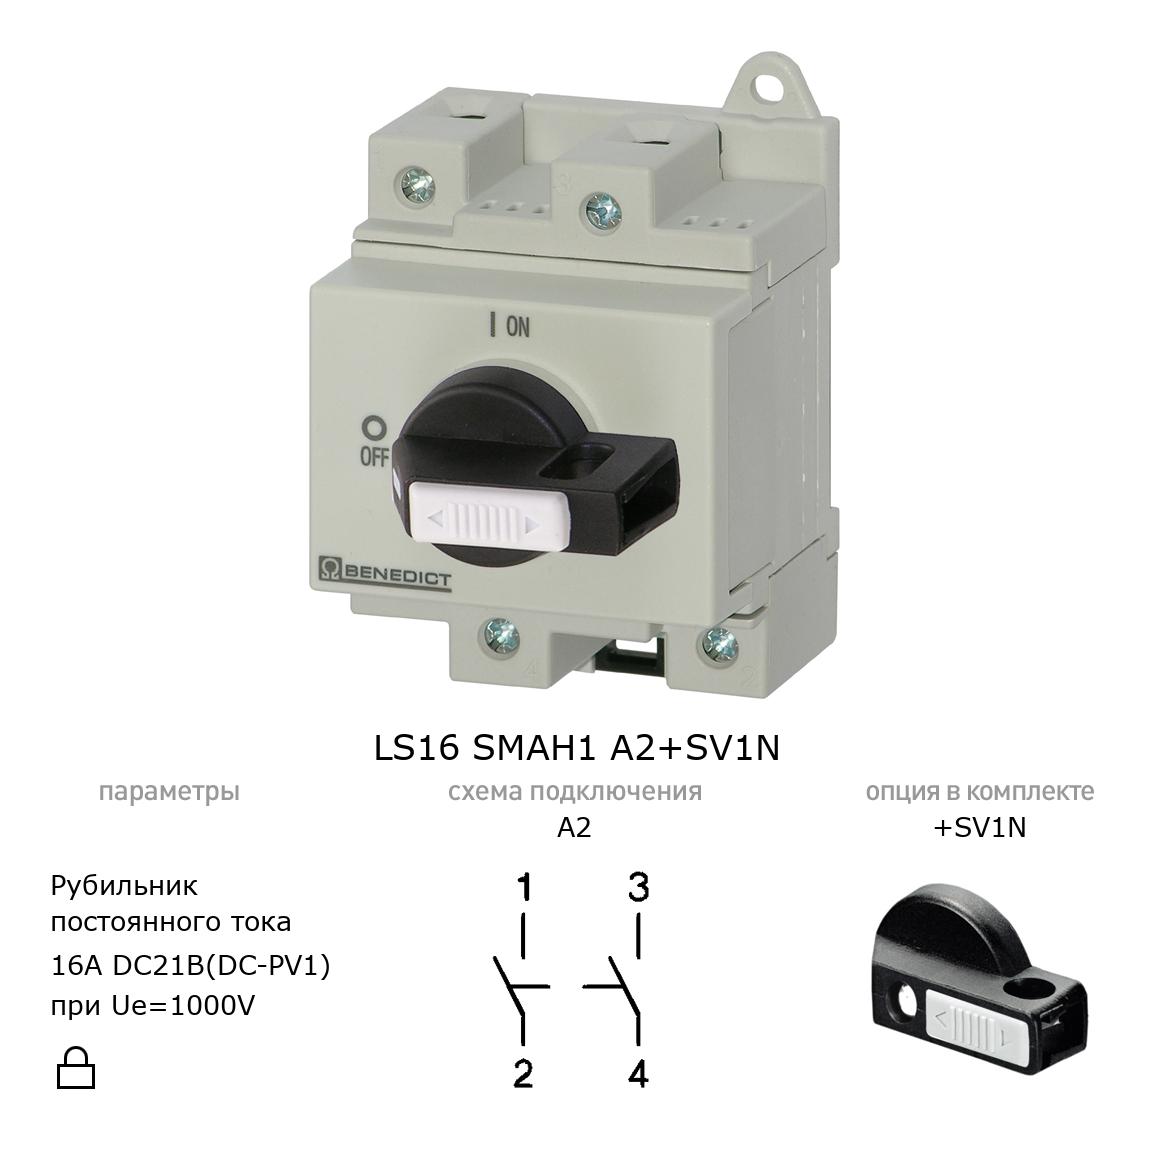 Выключатель нагрузки / рубильник для постоянного тока (DC) LS16 SMAH1 A2+SV1N BENEDICT